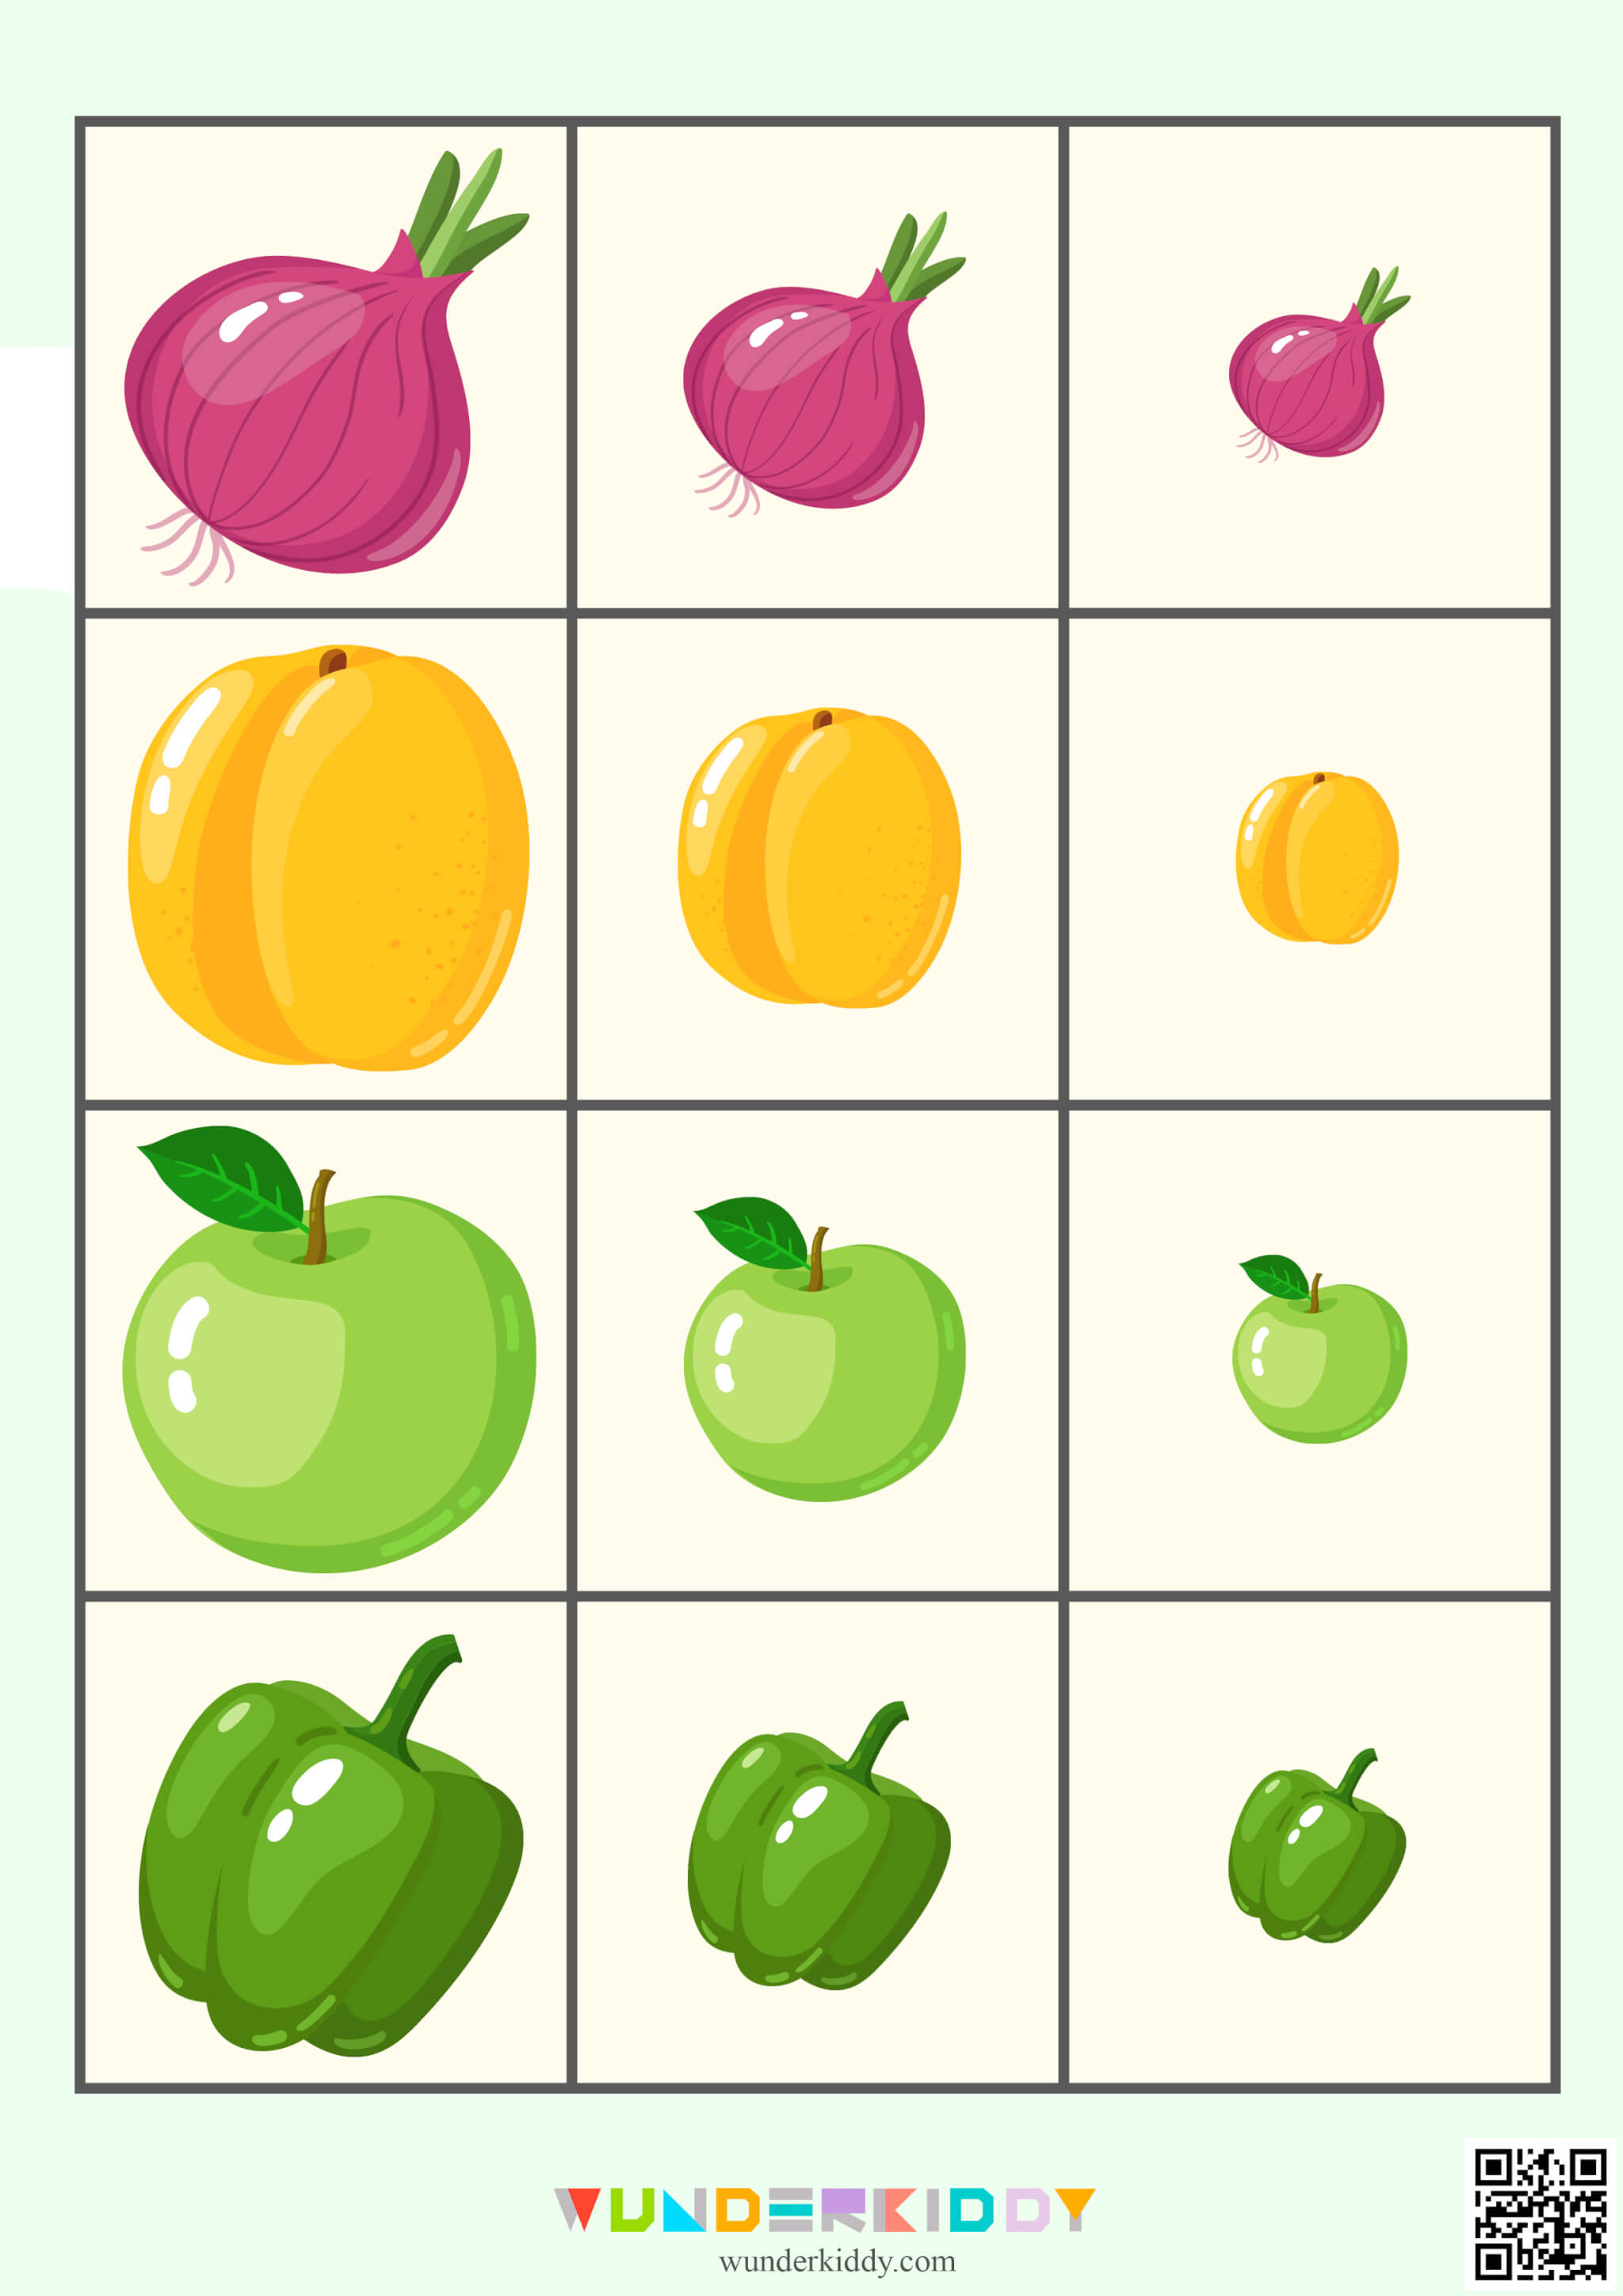 Worksheet «Fruits and Vegetables» - Image 5